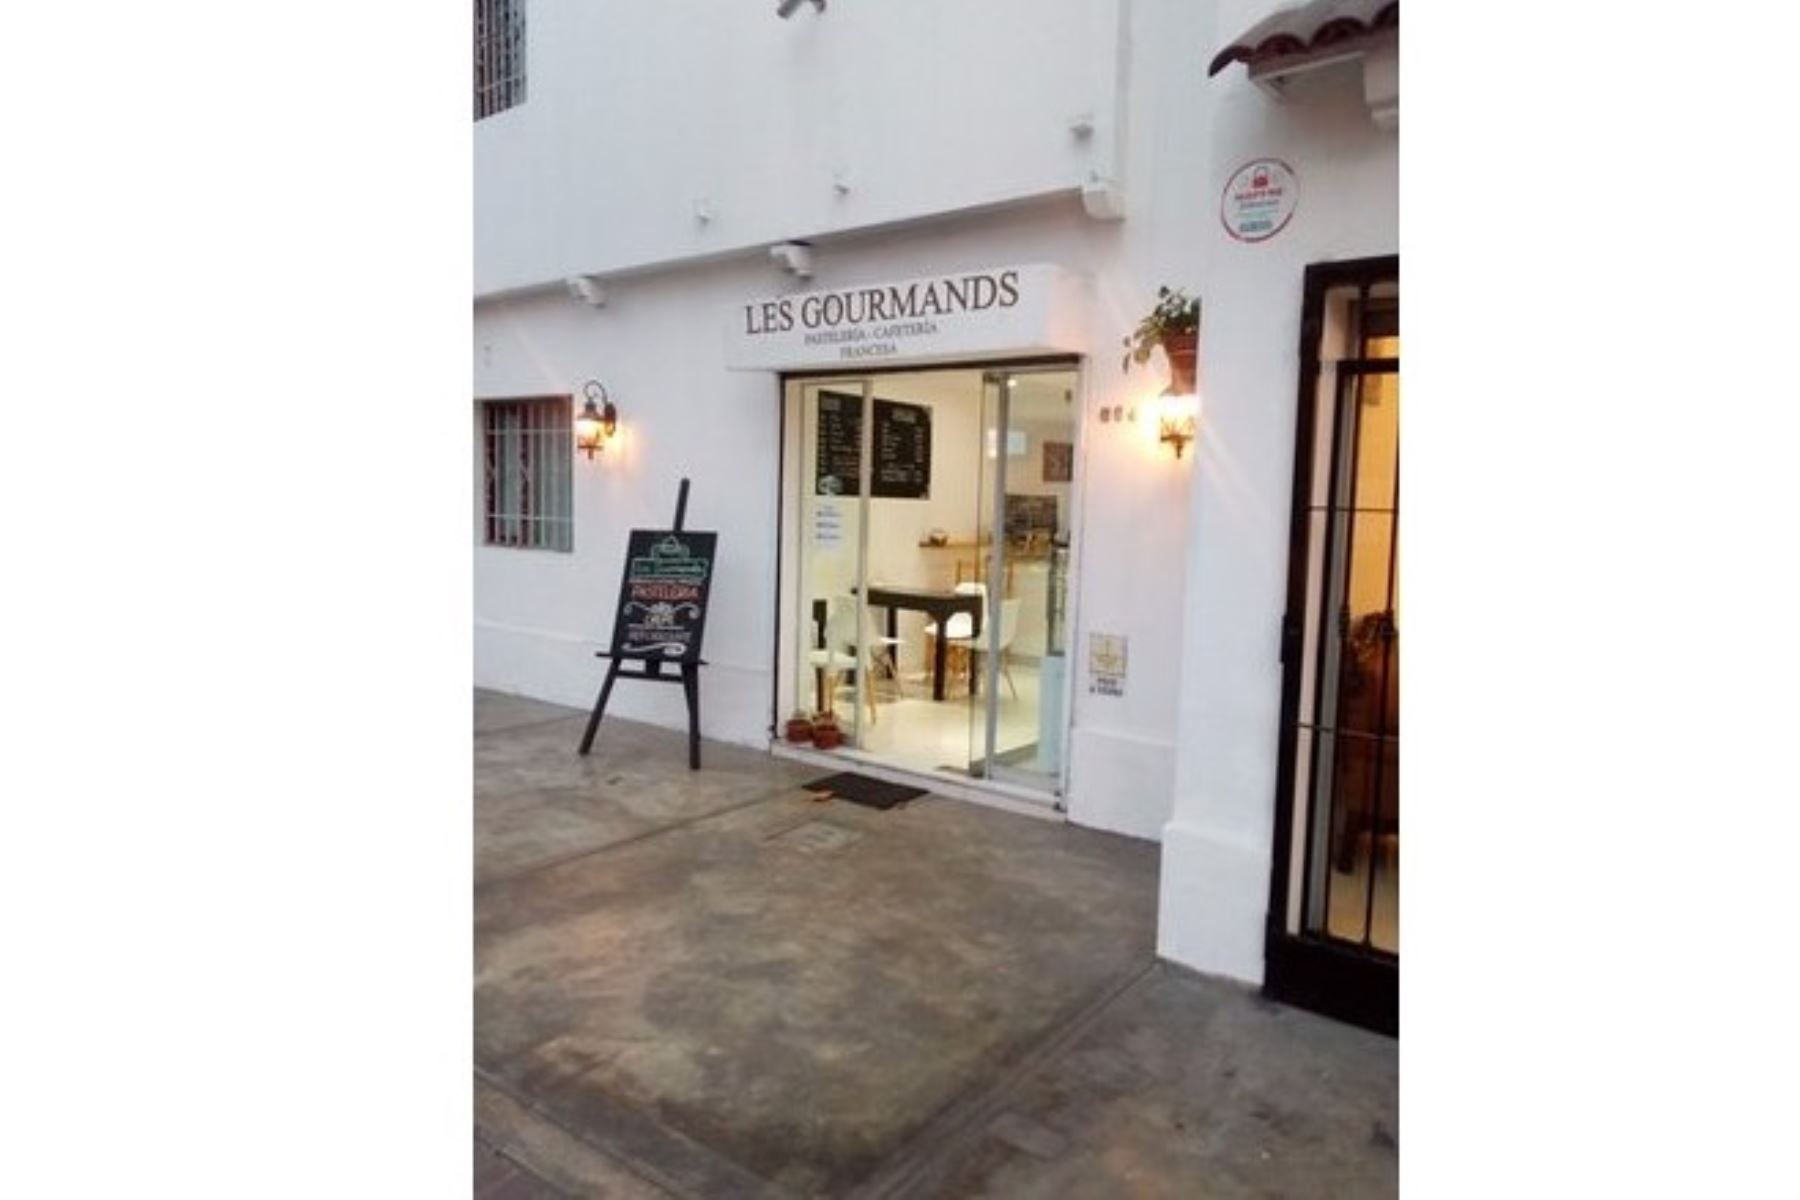 Restaurantes y cafeterías de Miraflores tendrán apoyo del gobierno local para su reactivación.